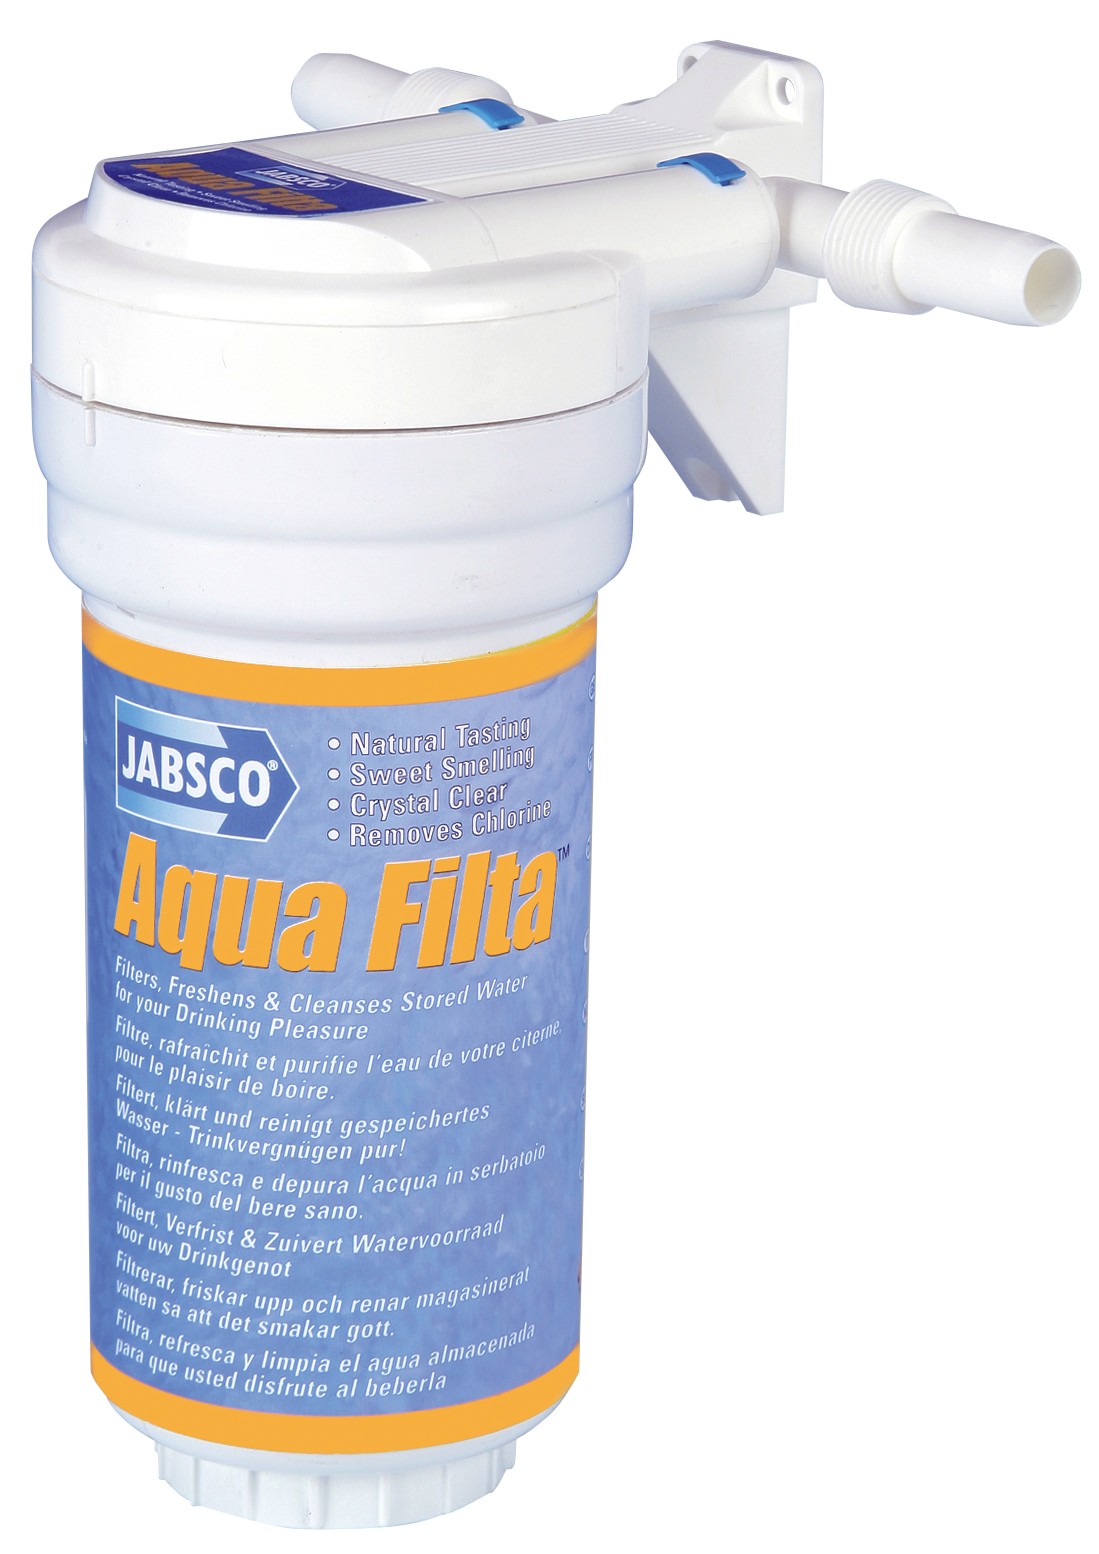 Wasserfilter Jabsco Aqua-Filta